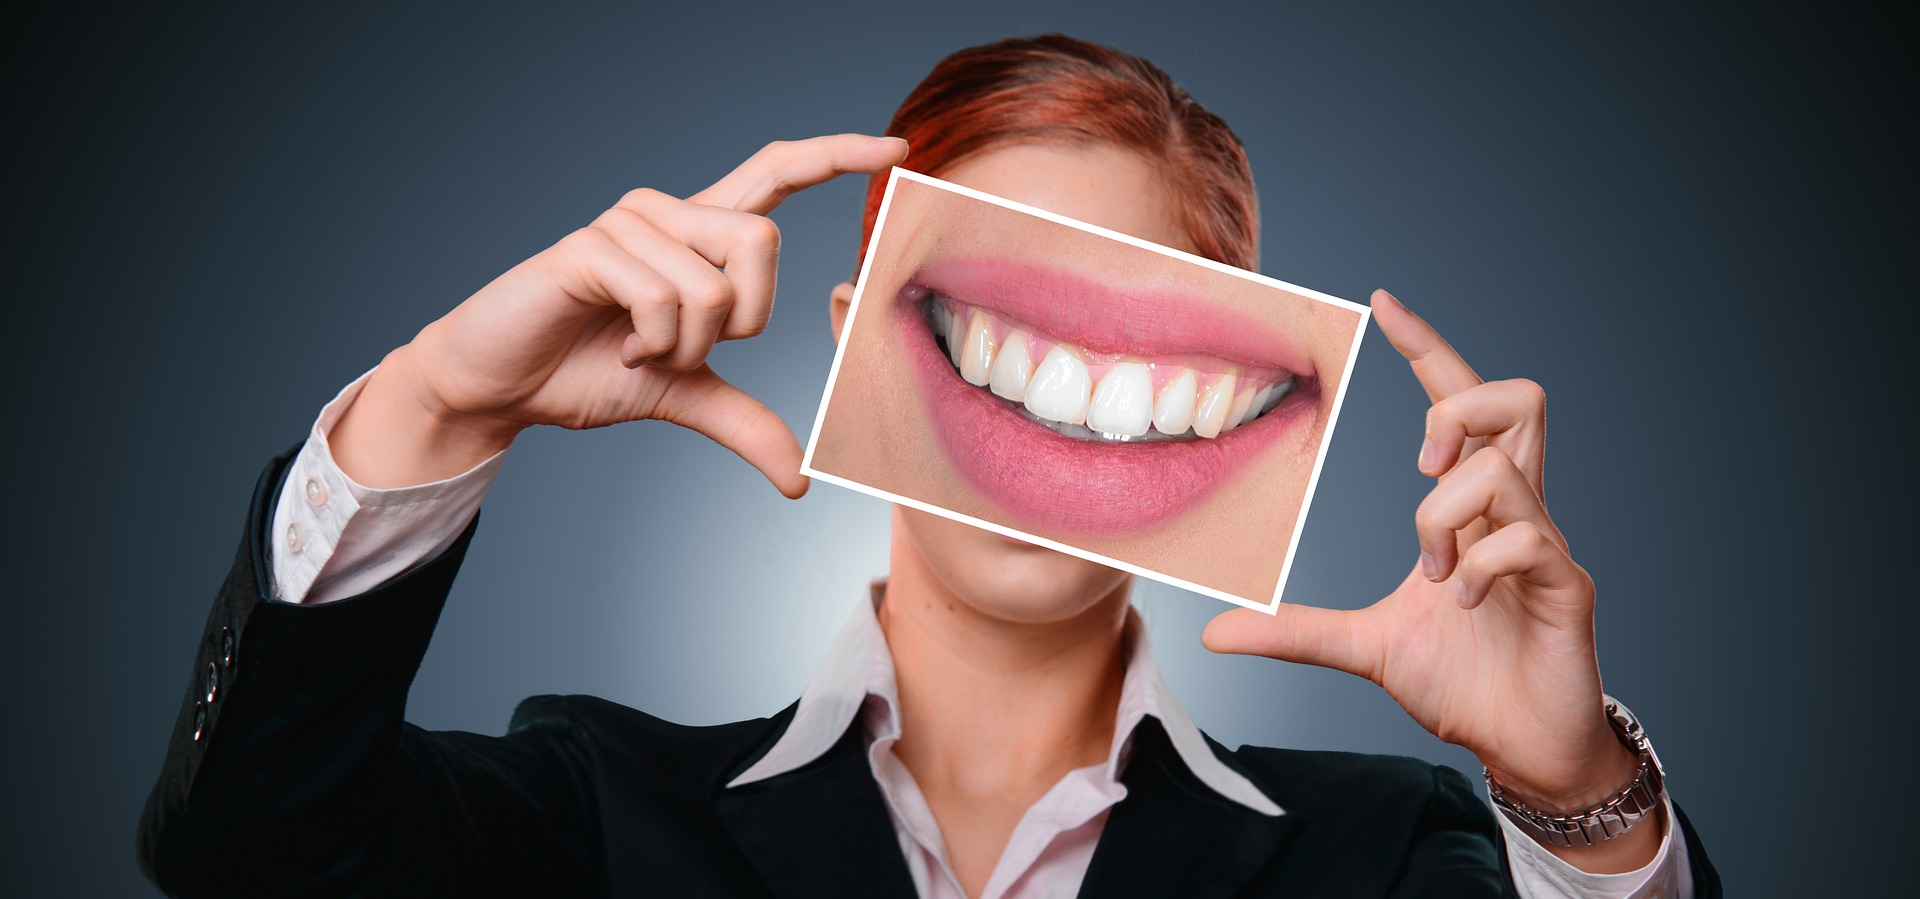 Carillas Dentales: que son, tipos y precios - Face Clinic